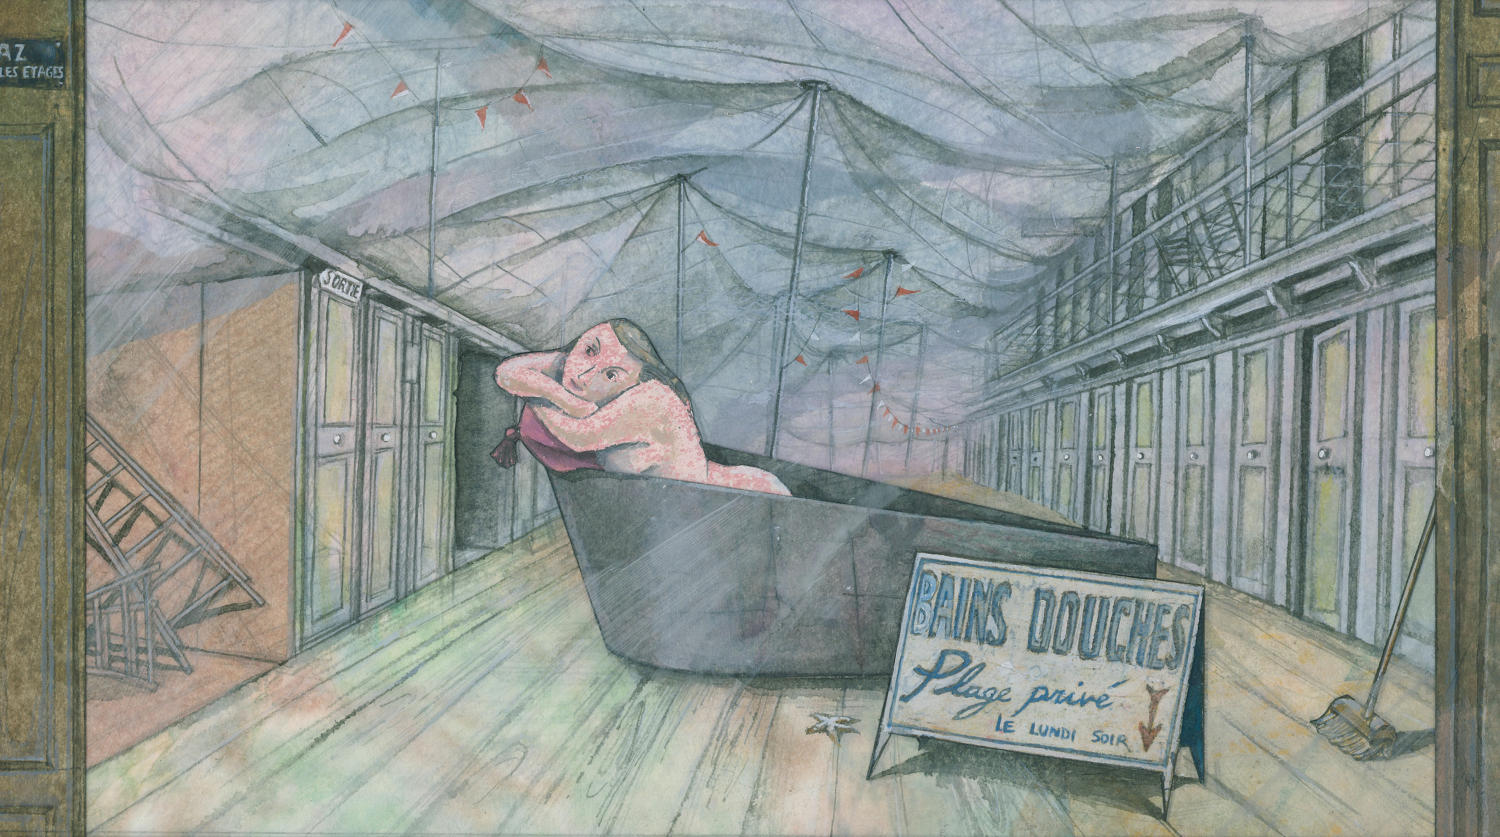 Gallery artwork public baths display - VITRINE - by Lys Flowerday